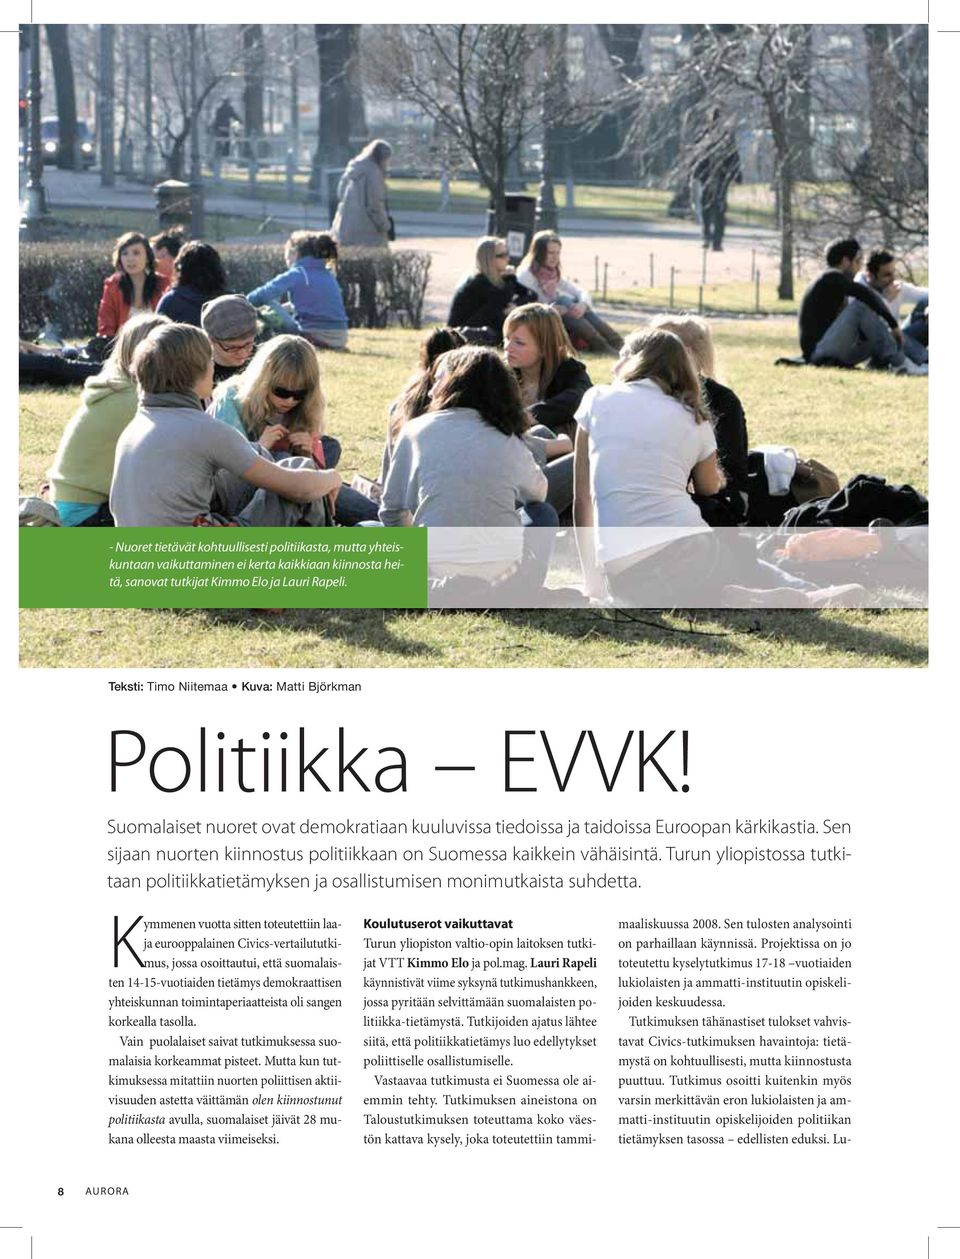 Sen sijaan nuorten kiinnostus politiikkaan on Suomessa kaikkein vähäisintä. Turun yliopistossa tutkitaan politiikkatietämyksen ja osallistumisen monimutkaista suhdetta.